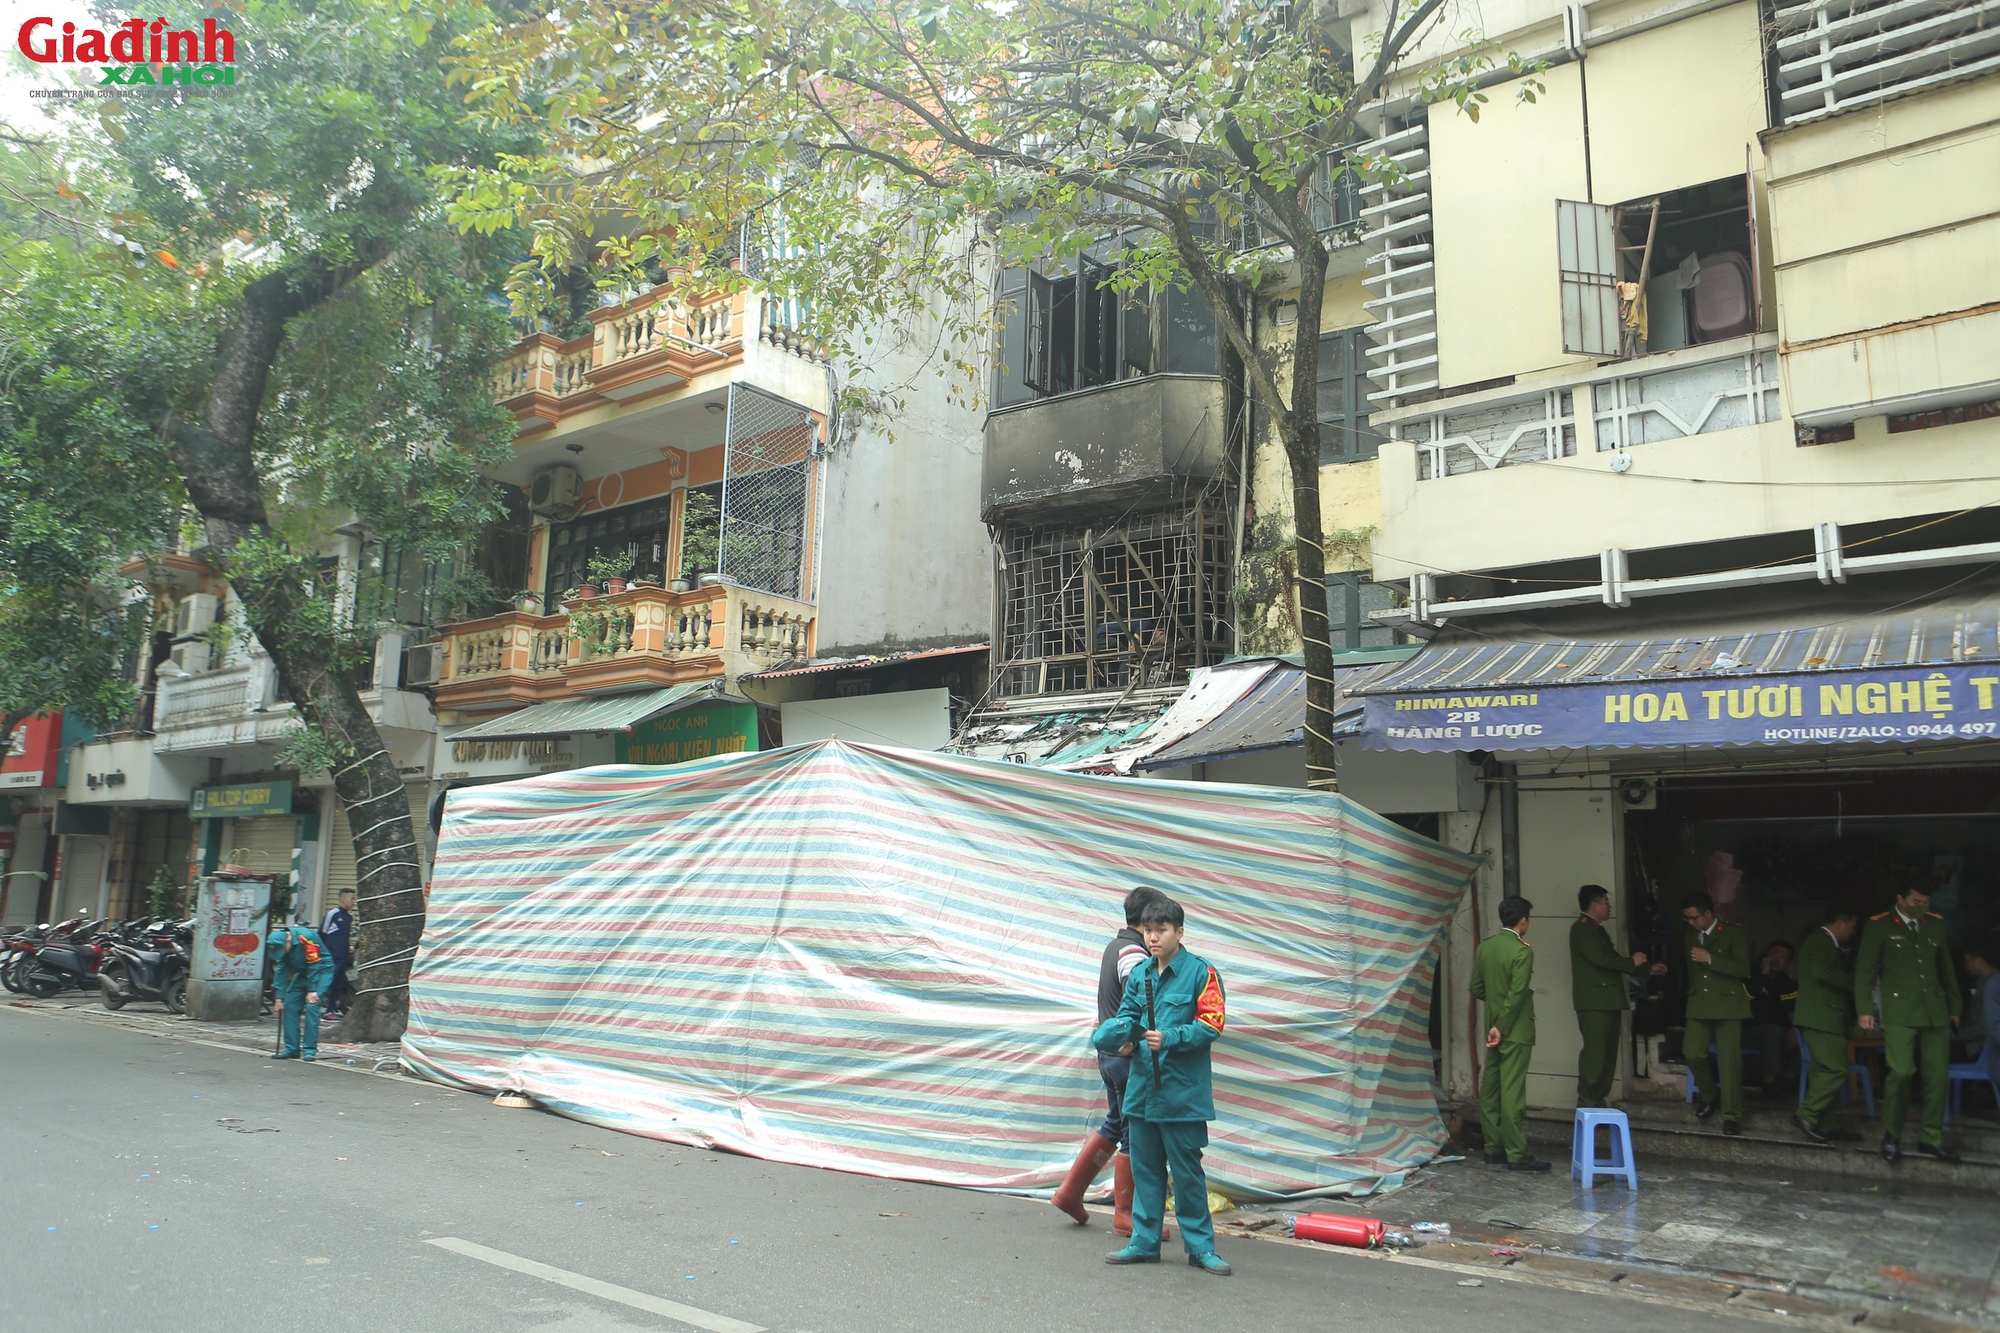 Hiện trường vụ cháy ở phố cổ Hà Nội khiến 4 người trong một gia đình tử vong thương tâm - Ảnh 2.